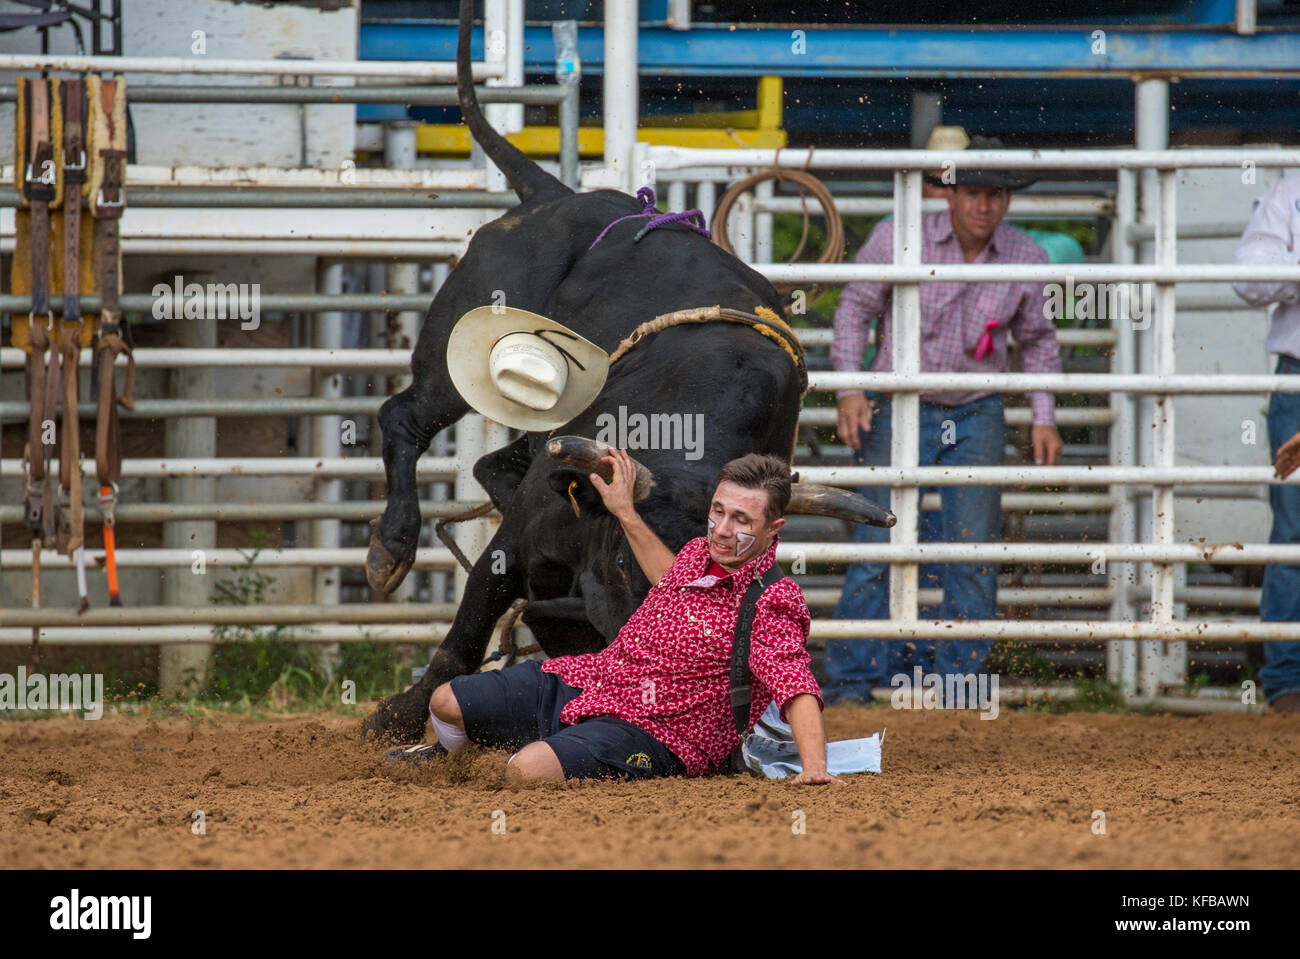 Bull inseguono a rodeo clown dopo aver gettato il suo pilota nel quarto calo annuo PRCA Rodeo in arcadia florida Foto Stock